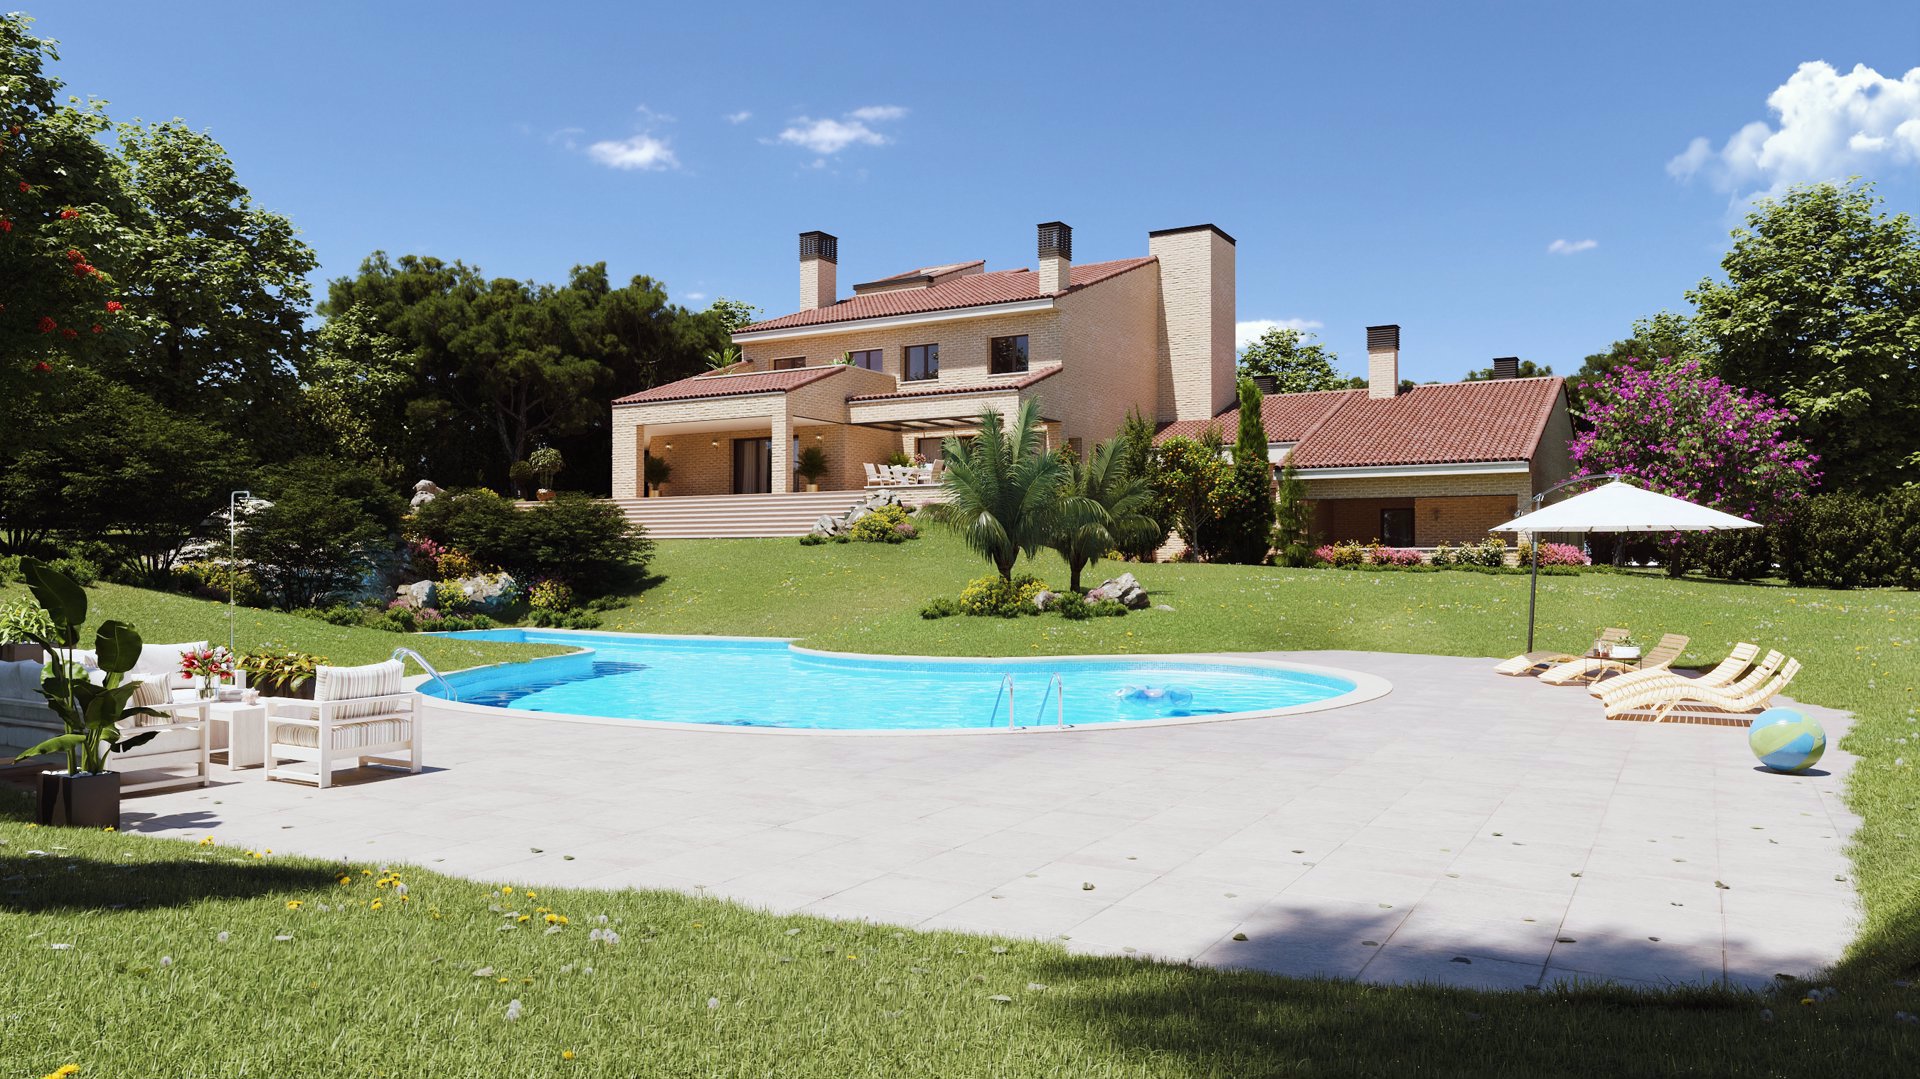 La casa cuenta con piscina, enorme jardín y casa de invitados